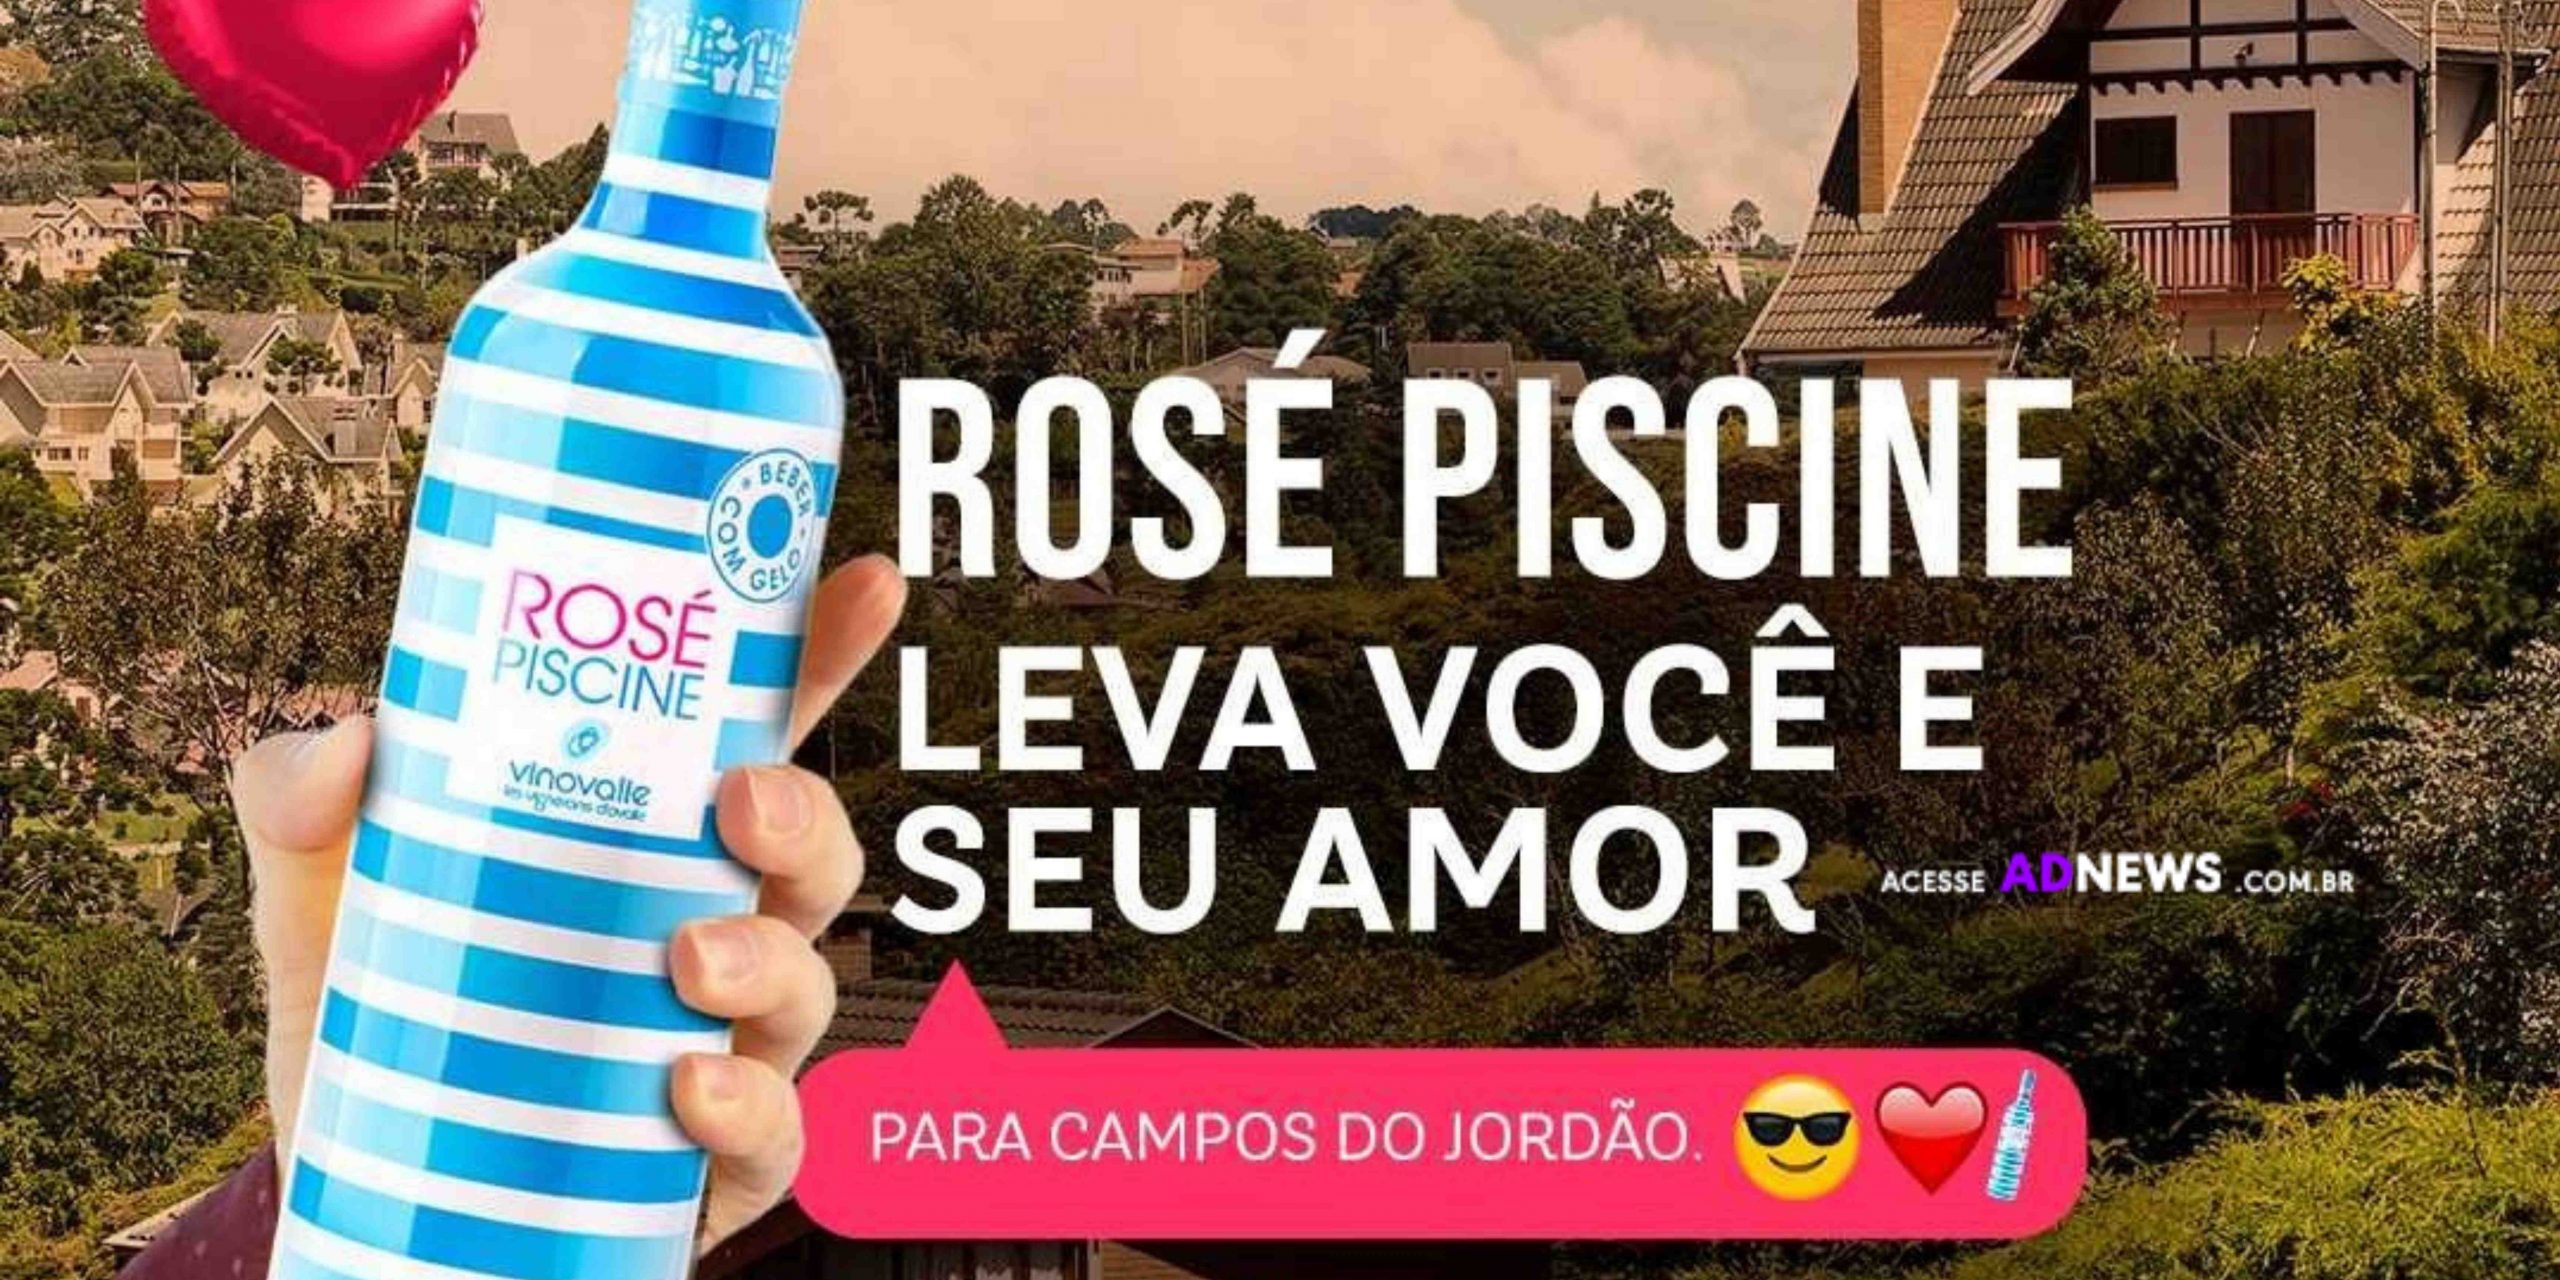 Rosé Piscine lança a campanha “Rosé Piscine Te Leva para Campos do Jordão com seu amor”.